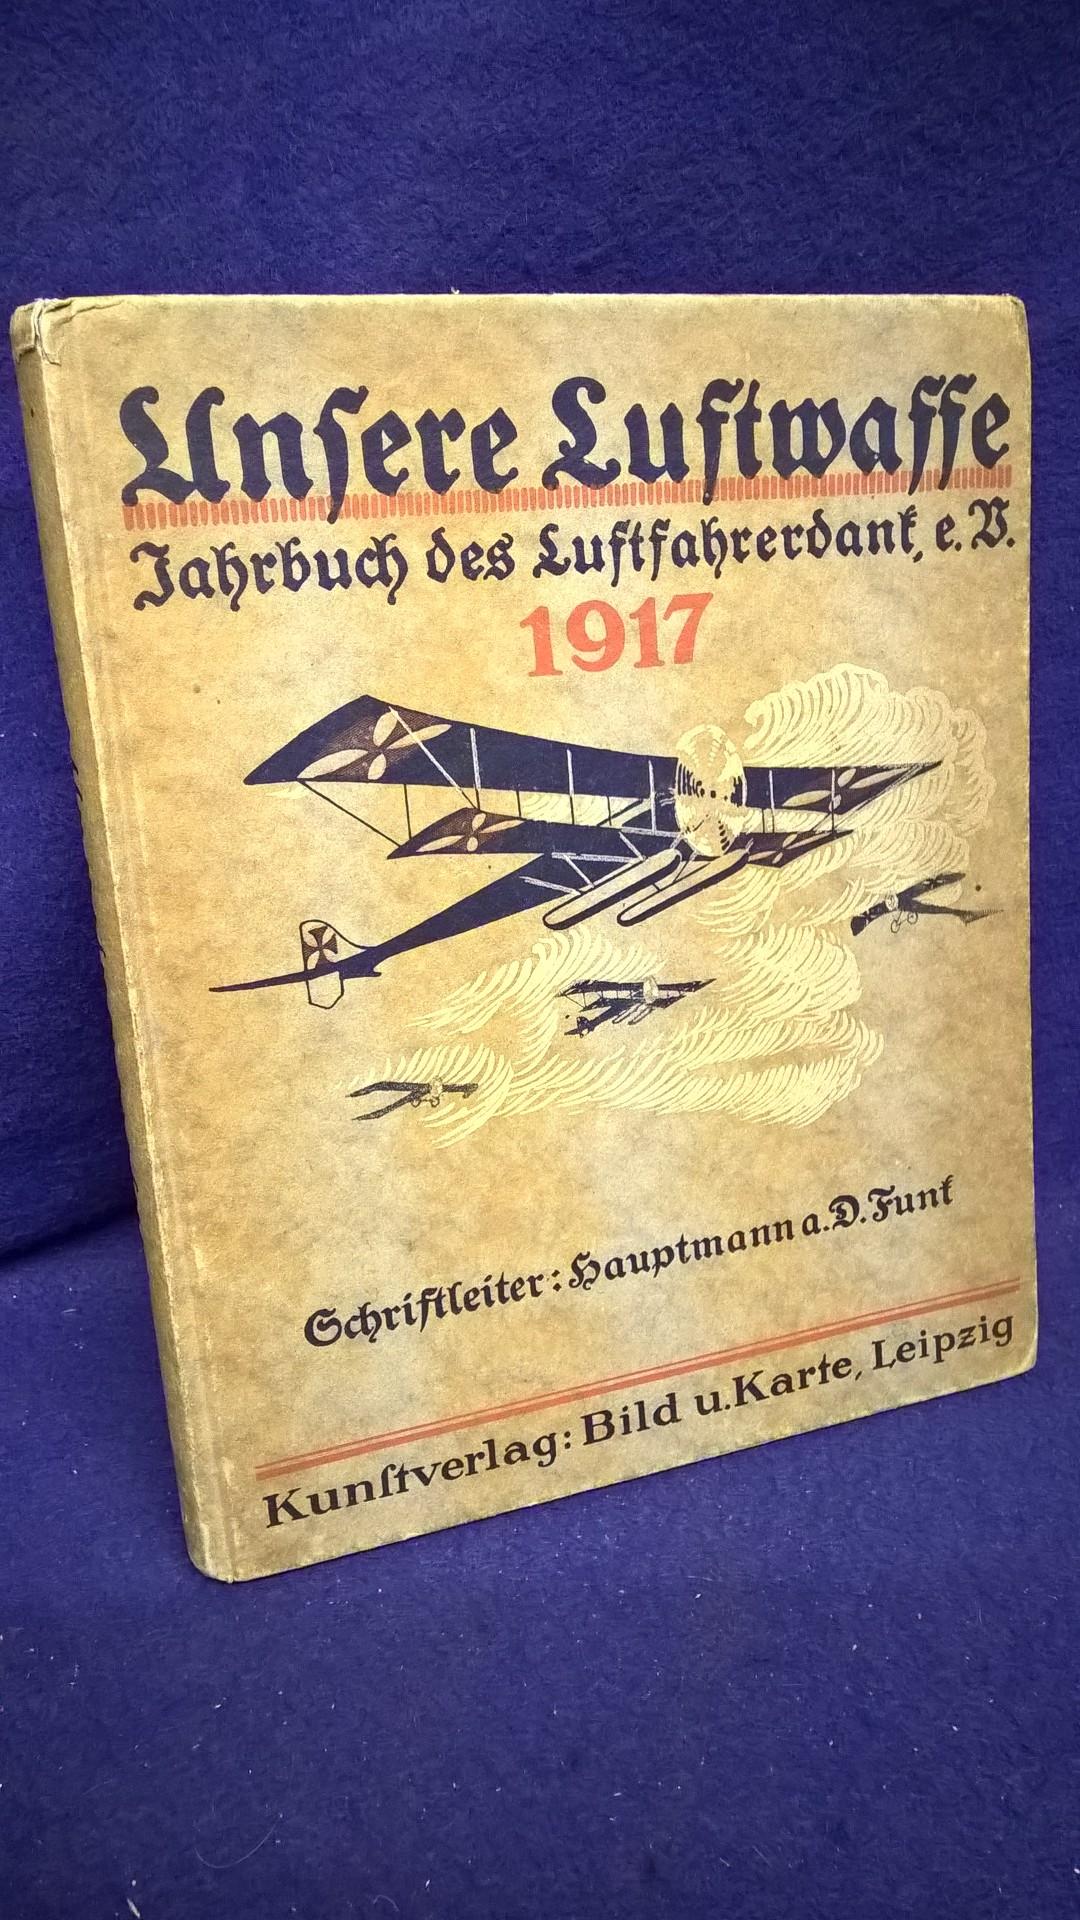 Unsere Luftwaffe. ihr Wesen und ihre Entwicklung, mit Beiträgen berühmter Flieger und Führer von Luftschiffen, zugleich Jahrbuch des Luftfahrerdank e. V. 1917.